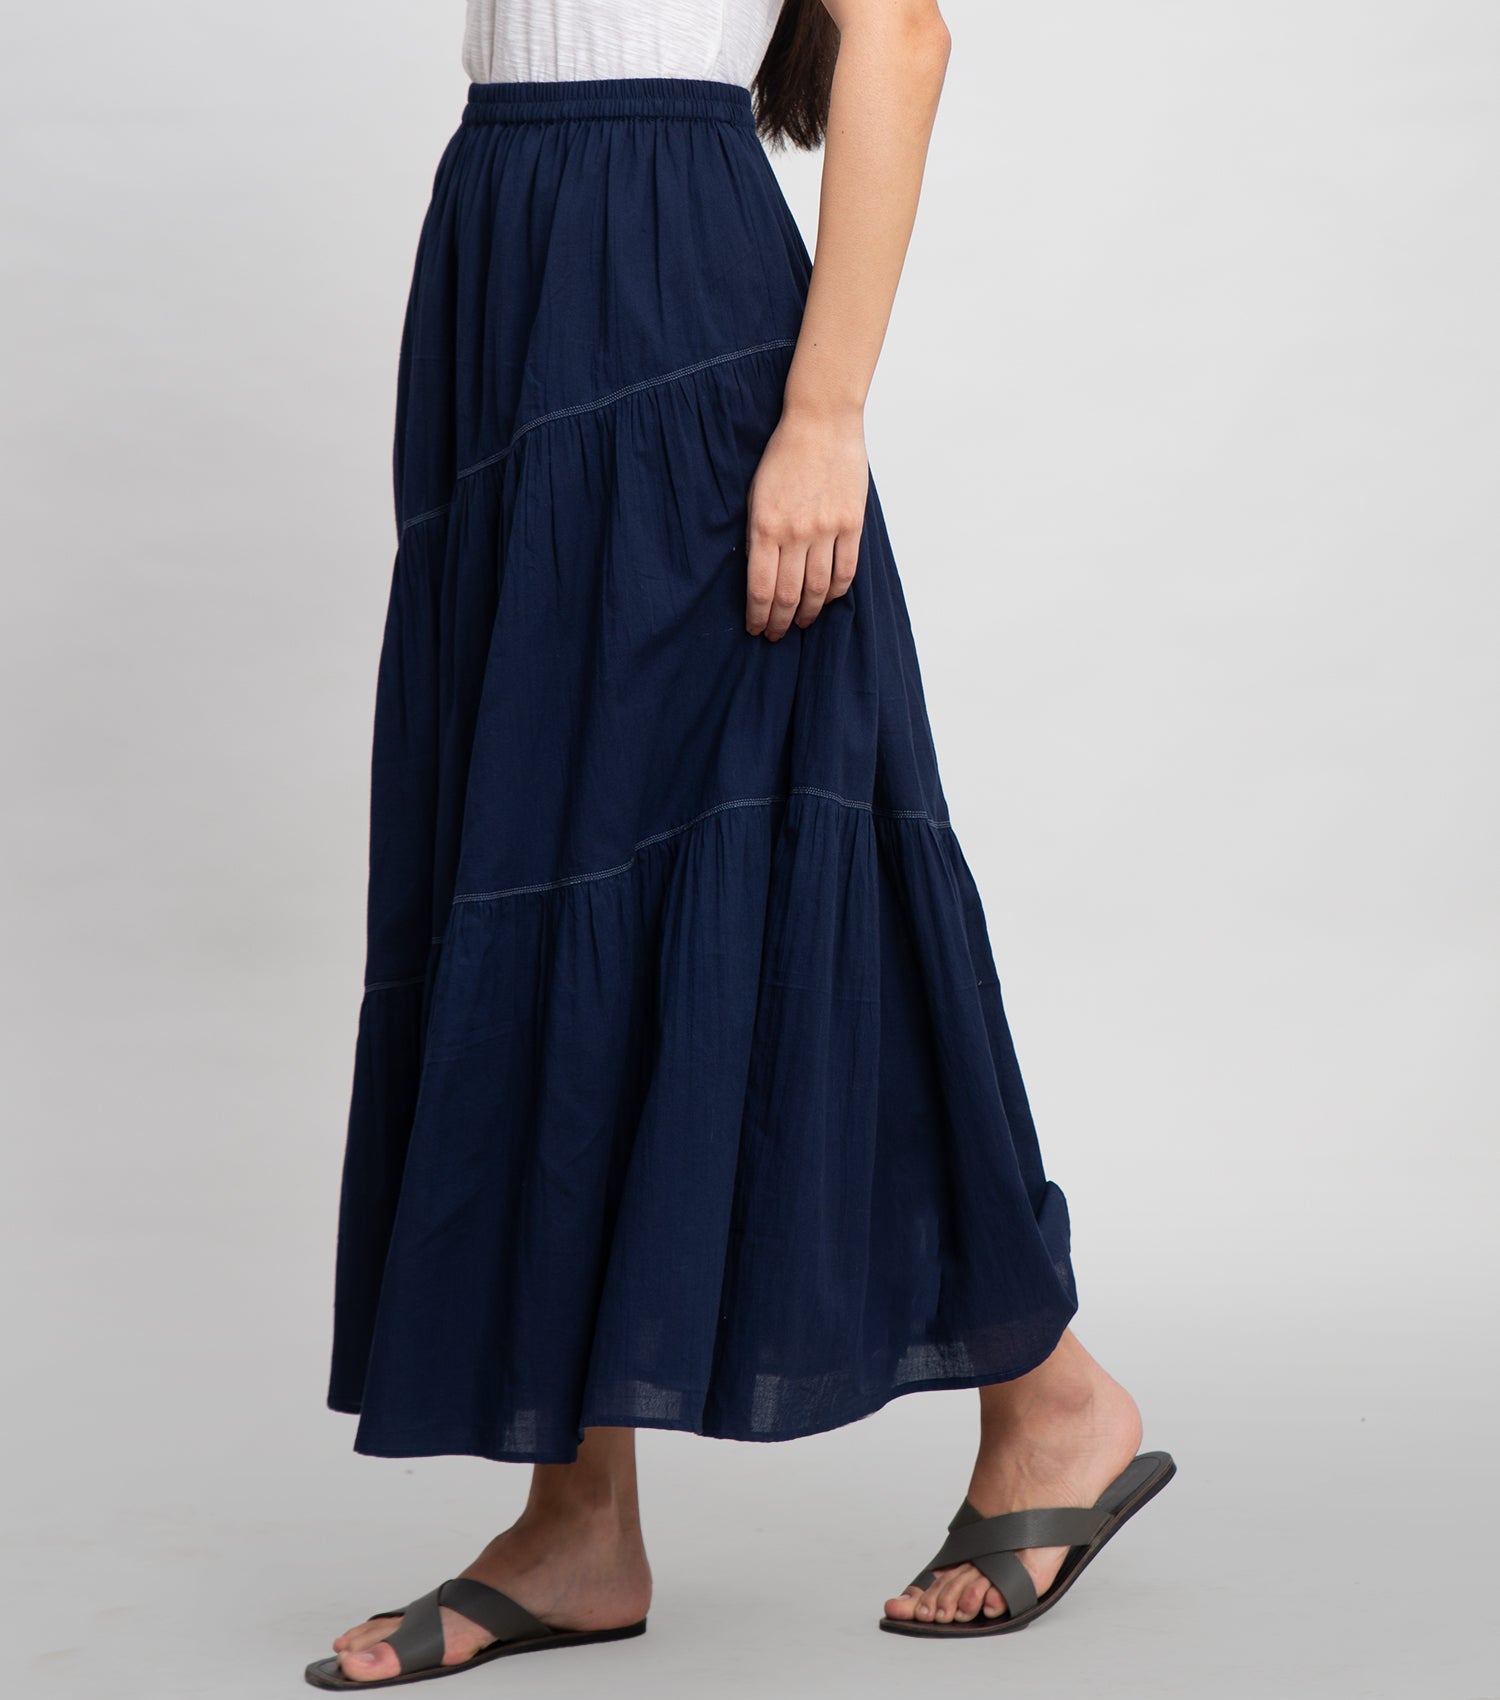 Navy Cotton Skirt with Thread Stitch Line Detail